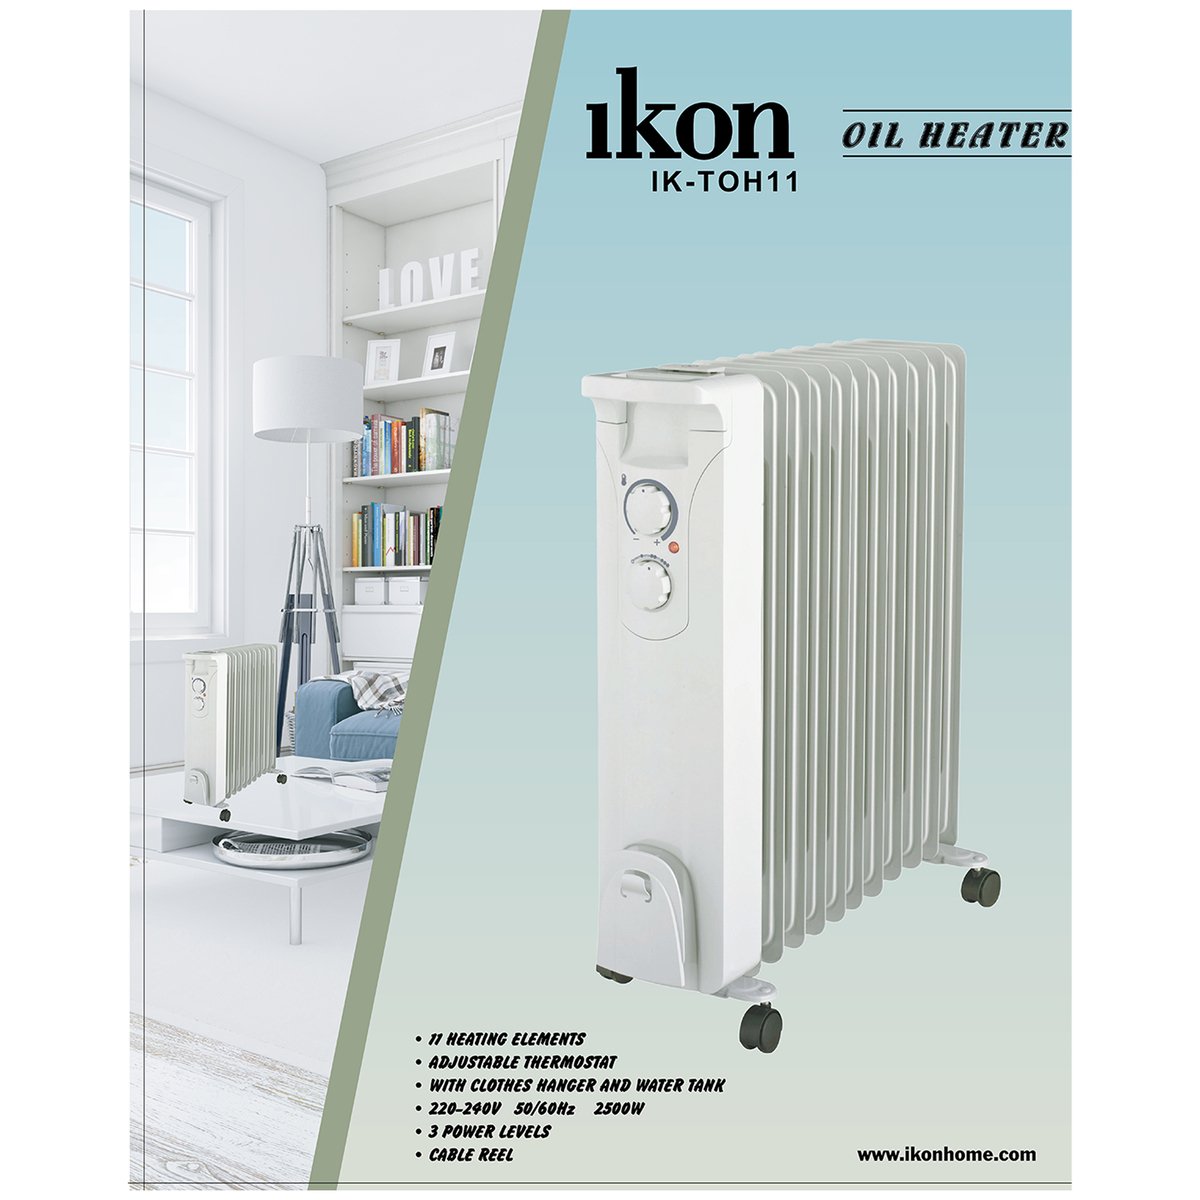 Ikon Oil Heater 11 Fins IK-TOH11 2500W